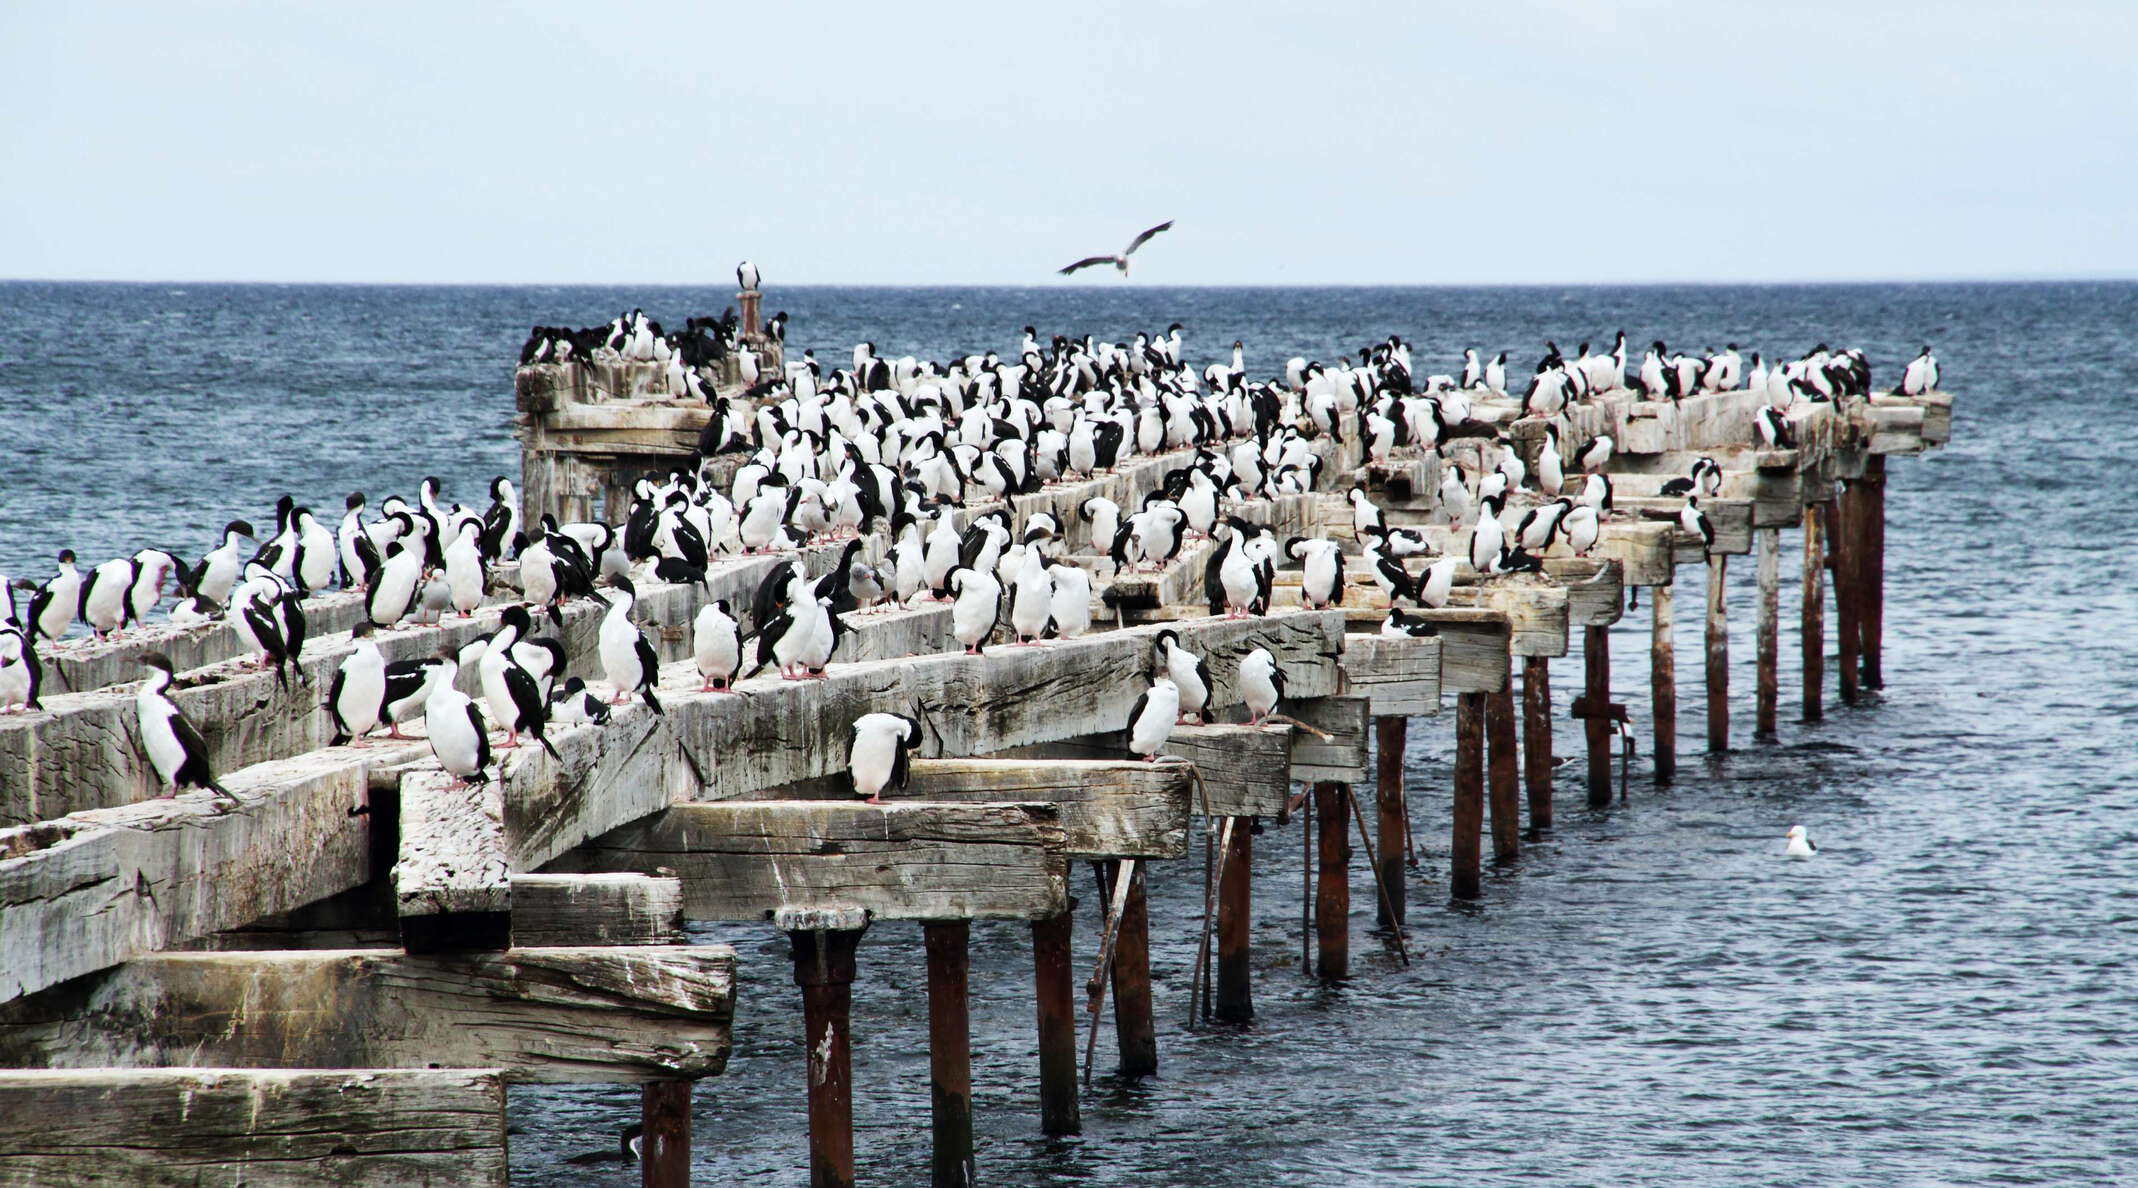 Punta Arenas | Old pier